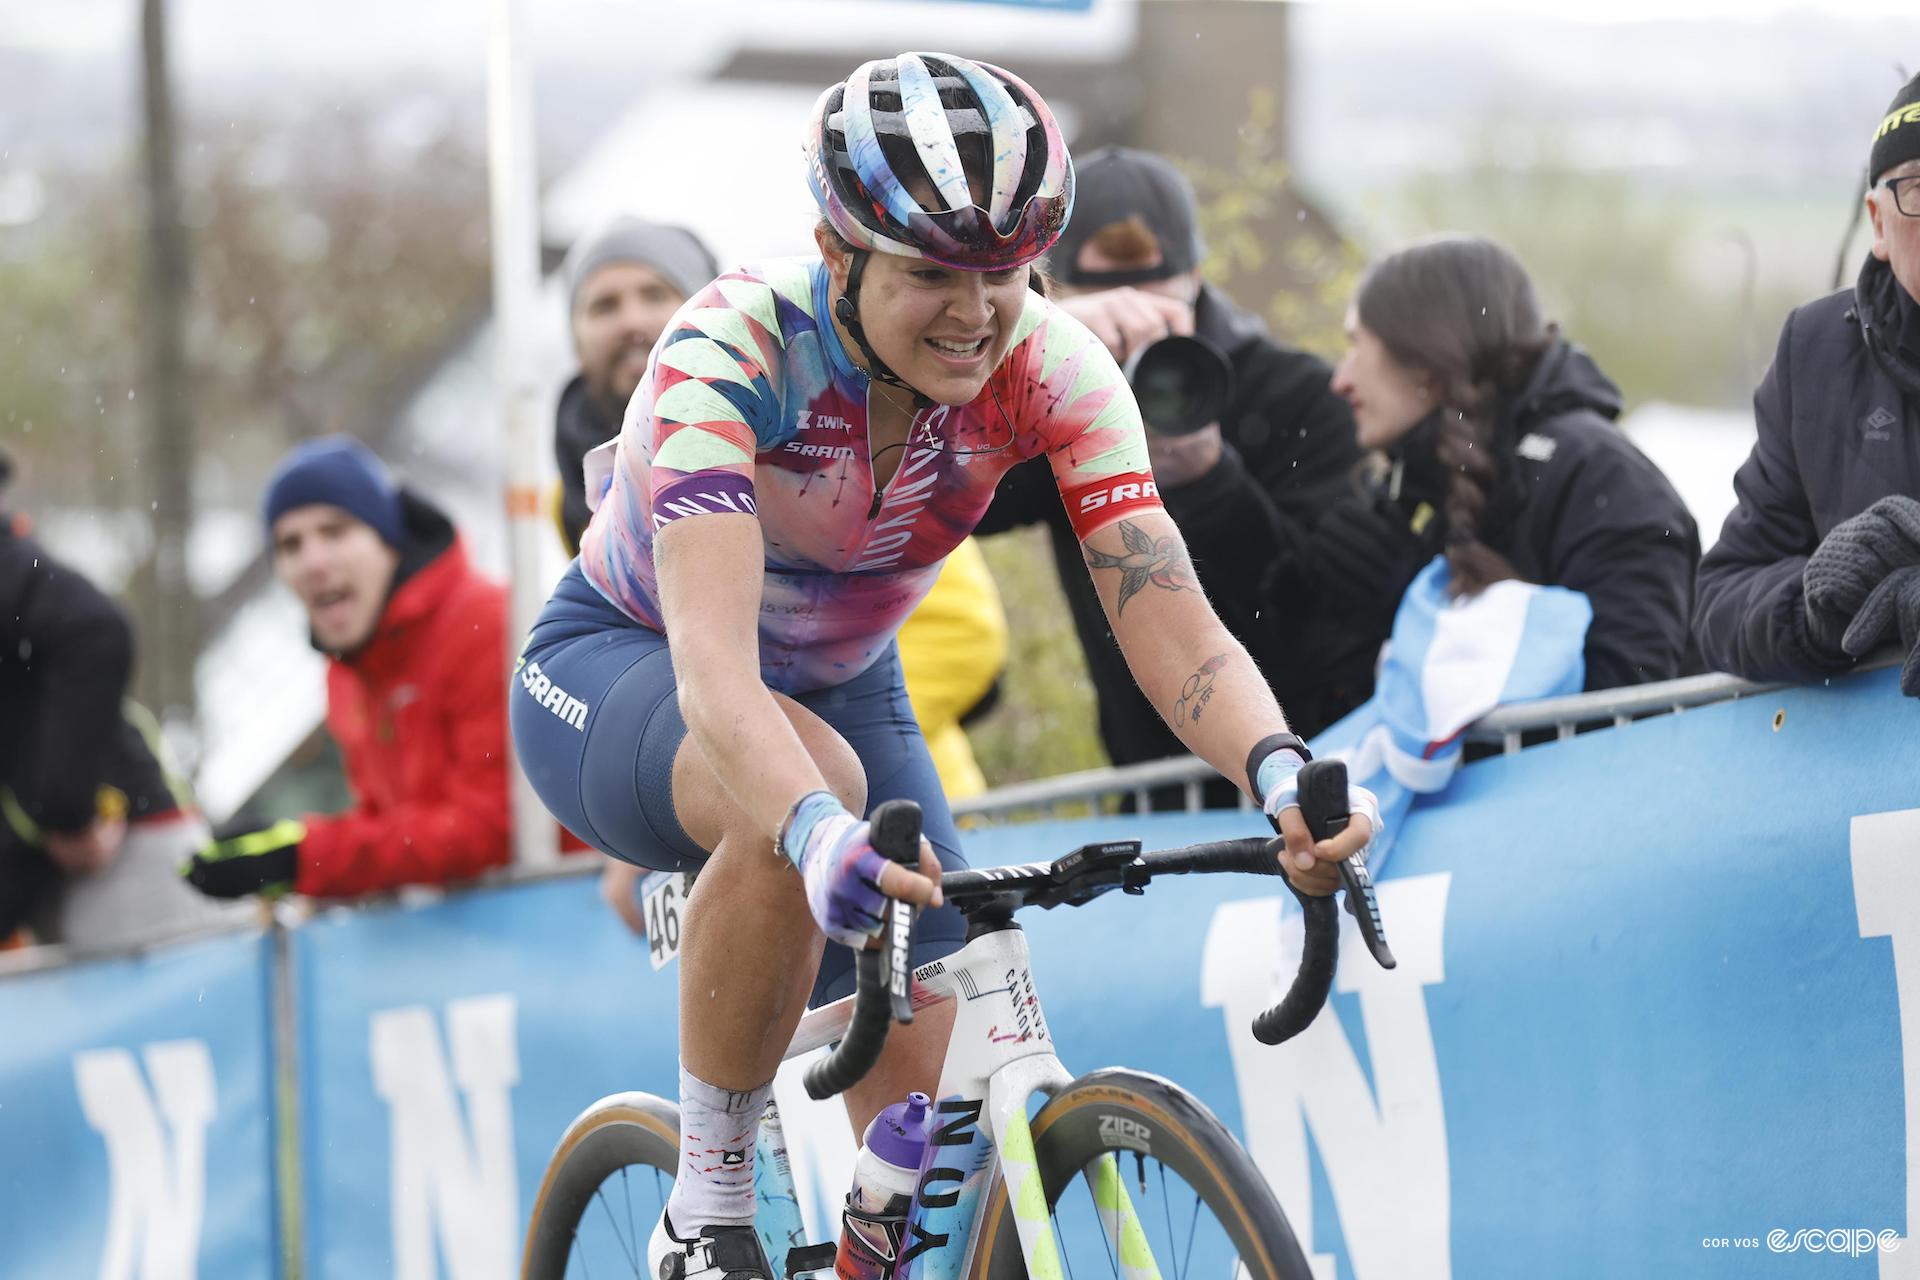 Soraya Paladin races the 2023 eidtion of the Tour of Flanders, or Ronde van Vlaanderen